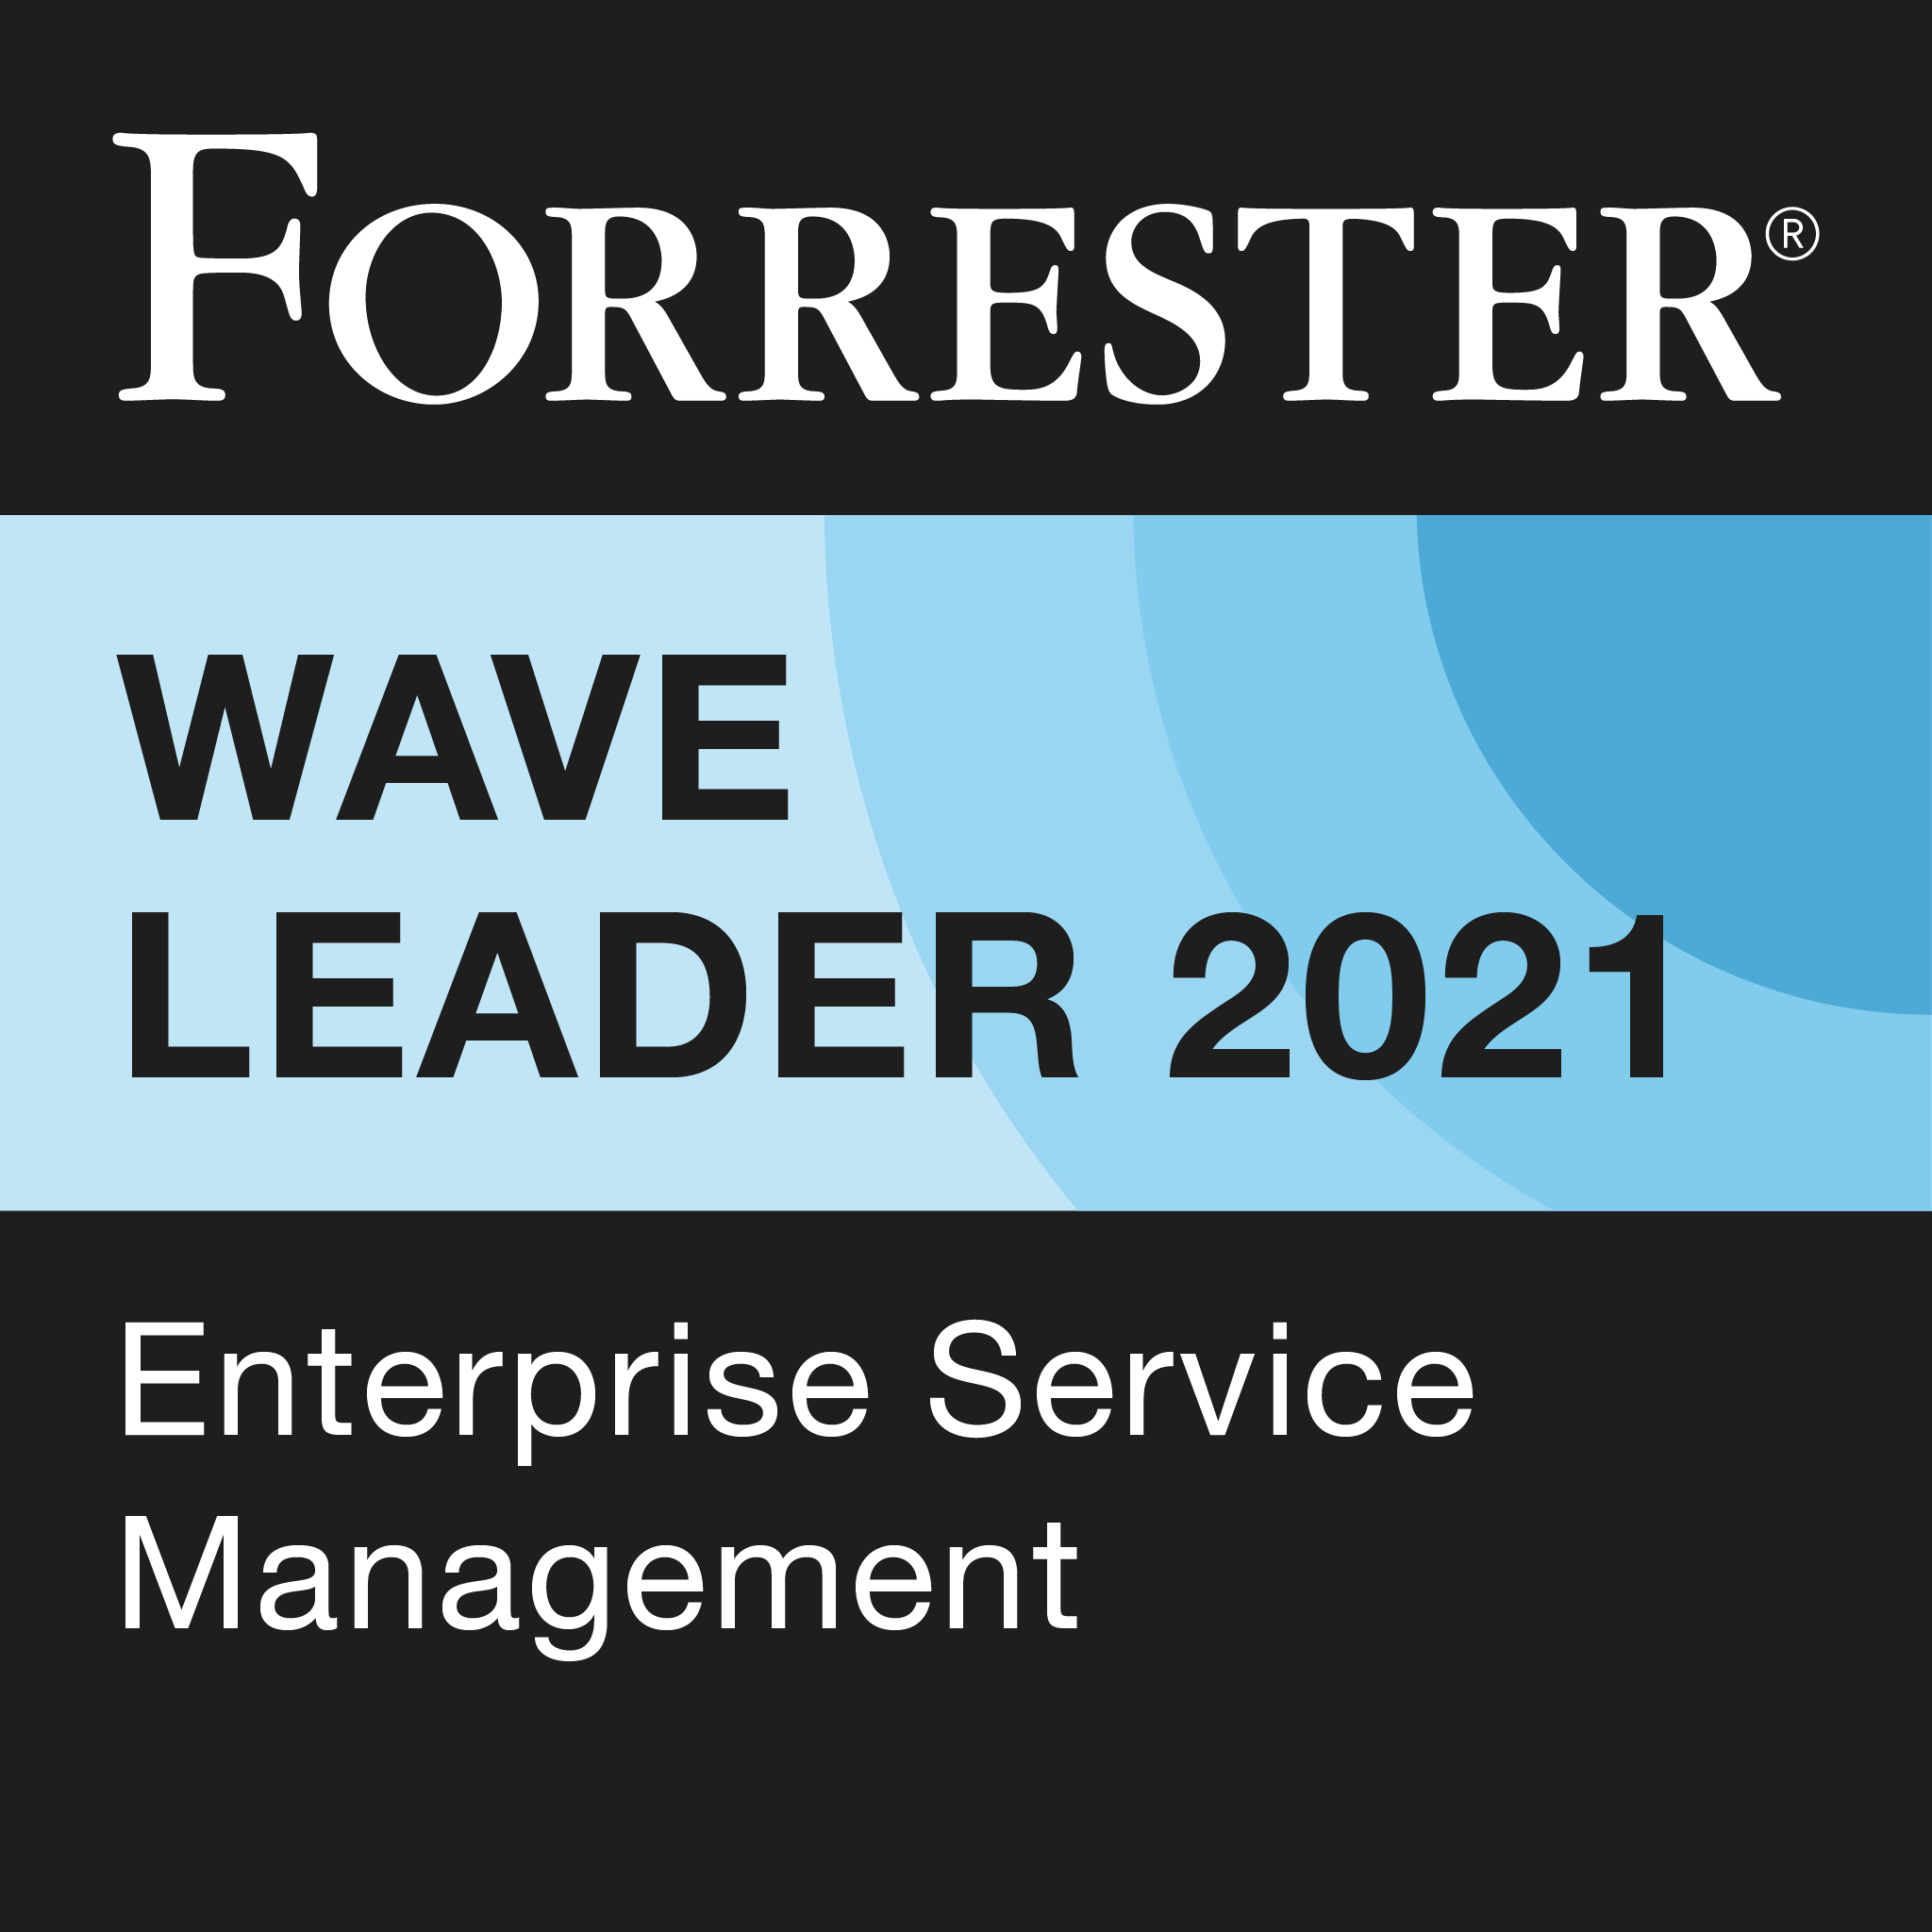 Forrester Wave: Enterprise Service Management (エンタープライズ サービス管理) リーダー (2021 年)